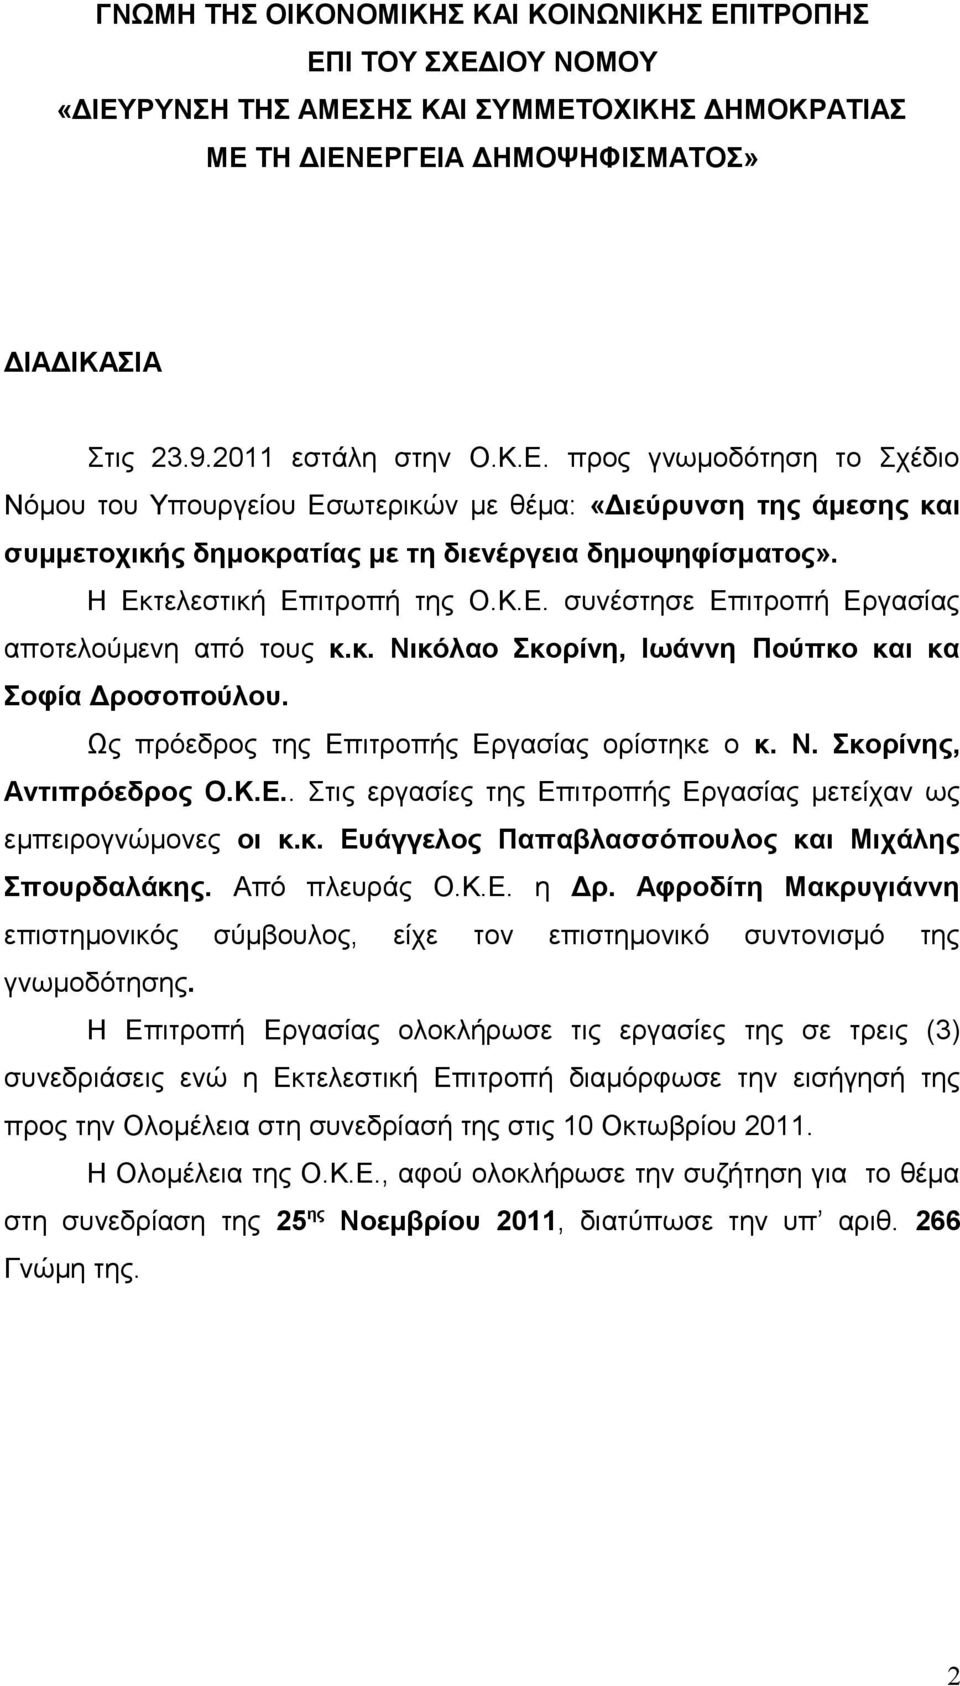 Κ.Ε.. Στις εργασίες της Επιτροπής Εργασίας μετείχαν ως εμπειρογνώμονες οι κ.κ. Ευάγγελος Παπαβλασσόπουλος και Μιχάλης Σπουρδαλάκης. Από πλευράς Ο.Κ.Ε. η Δρ.